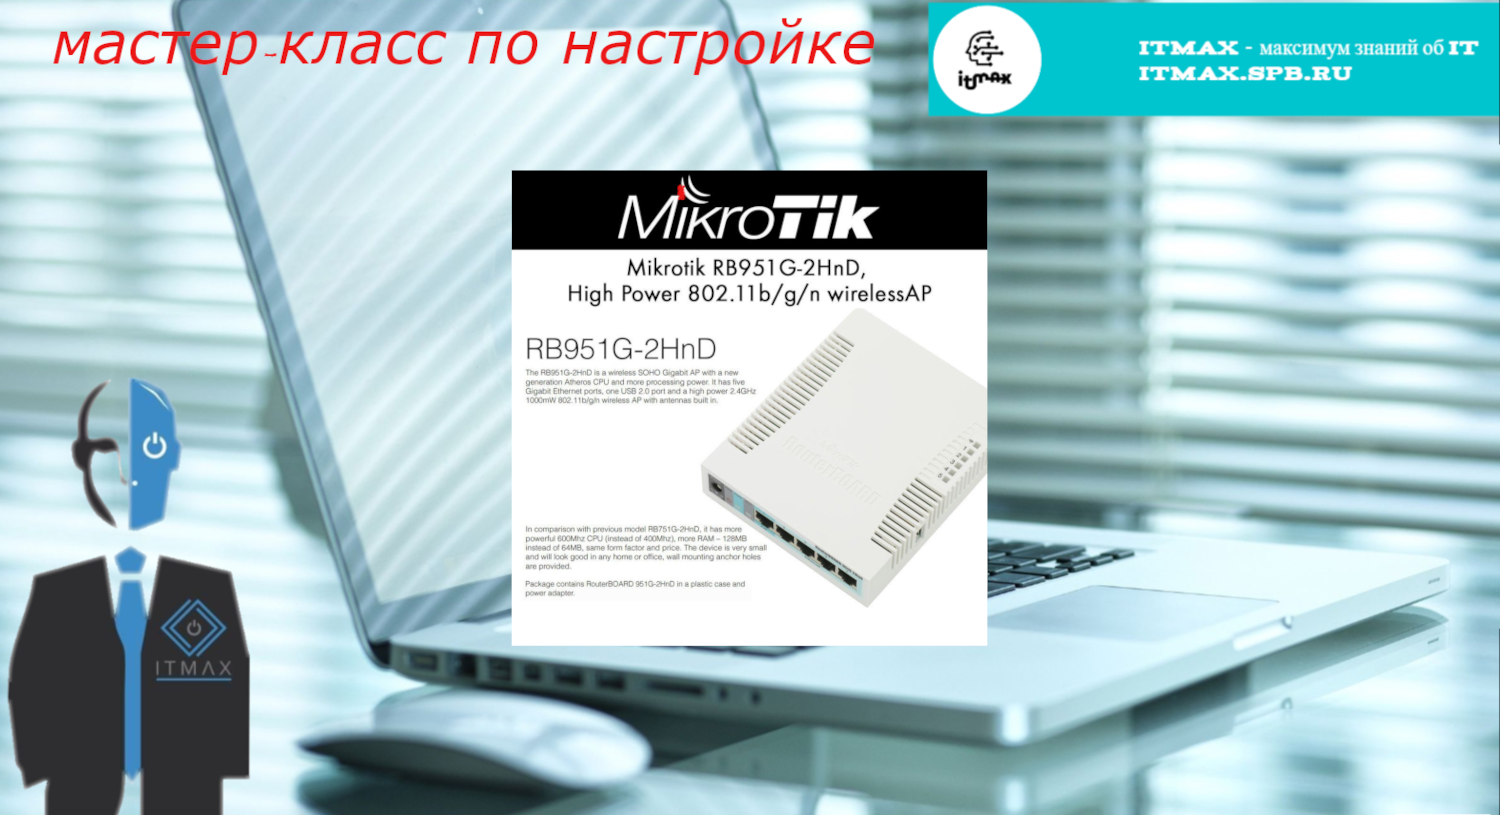 Мастер-класс для новичков по настройке домашнего интернет на роутере Mikrotik.